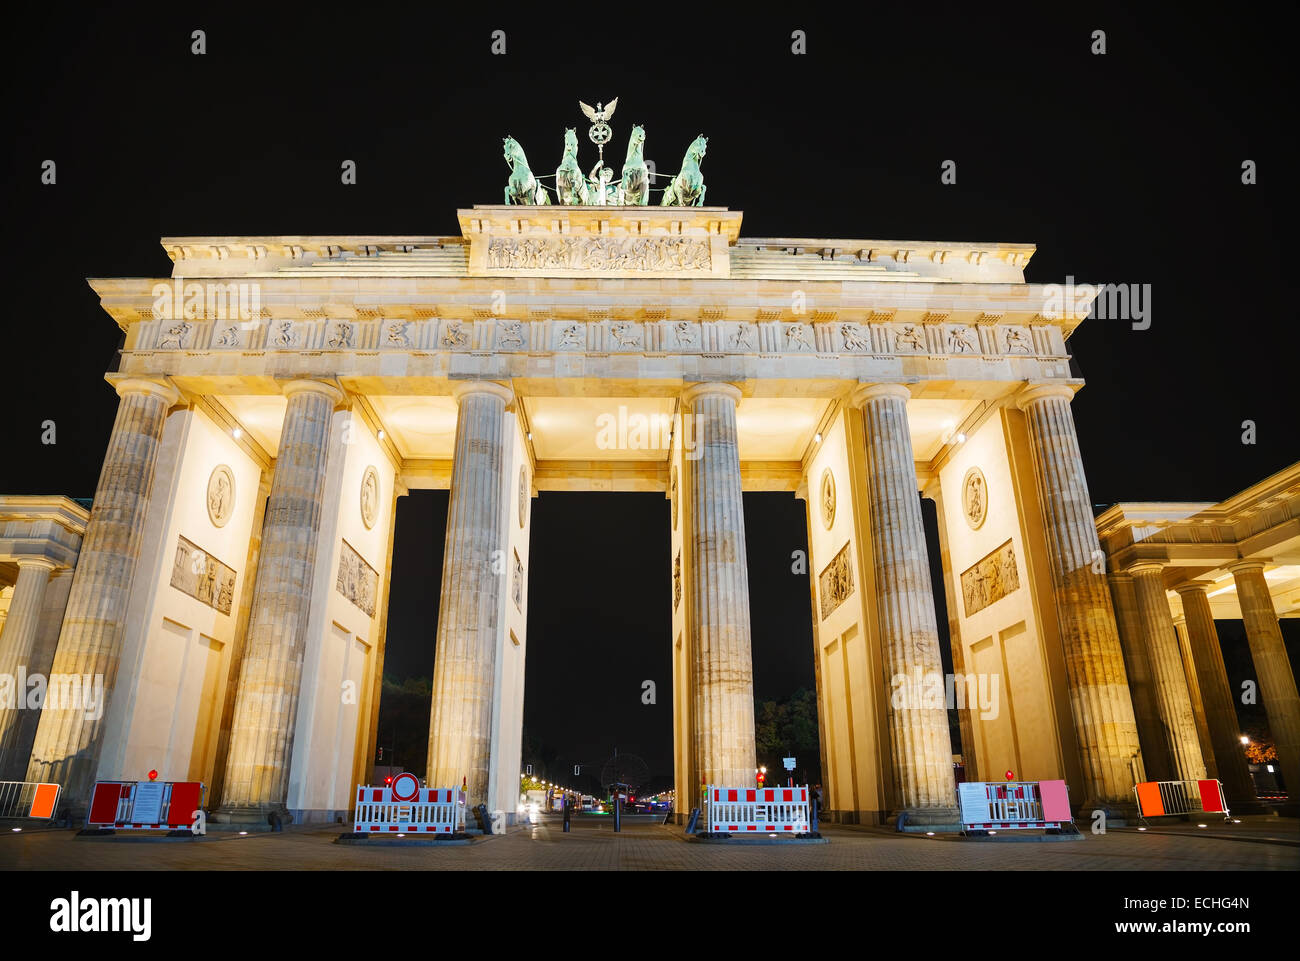 La porta di Brandeburgo (Brandenburger Tor) di Berlino in Germania di notte Foto Stock